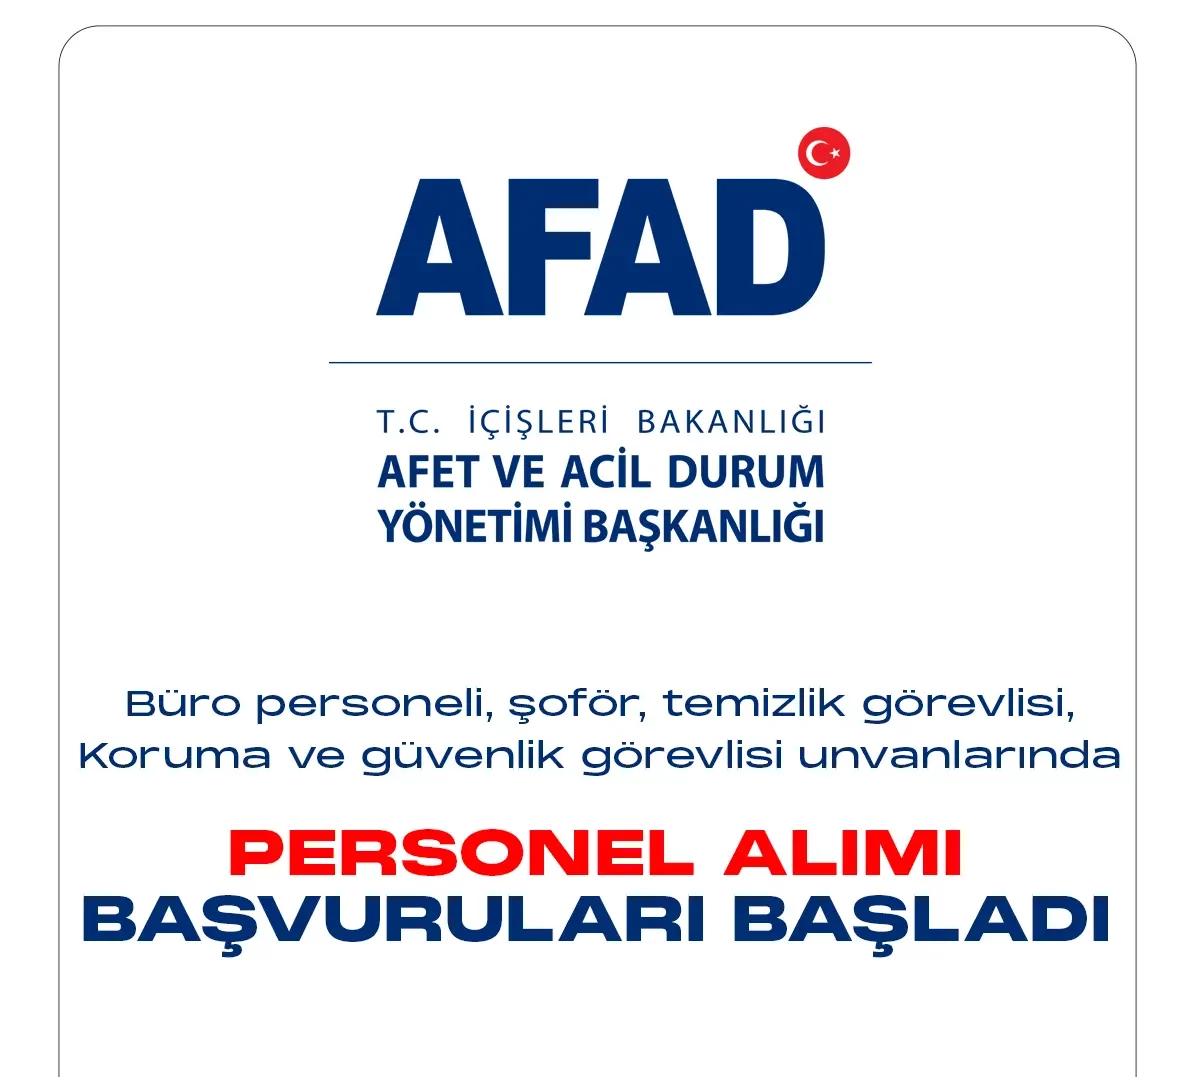 Afet ve Acil Durum Yönetimi Başkanlığı (AFAD) personel alımı başvuruları bugün başladı. 29 Aralık 2022 tarihinde yayımlanan duyuruda, AFAD'a büro personeli, şoför, temizlik görevlisi ile koruma ve güvenlik unvanlarında 70 sözleşmeli personel alımı yapılacağına yer verildi.